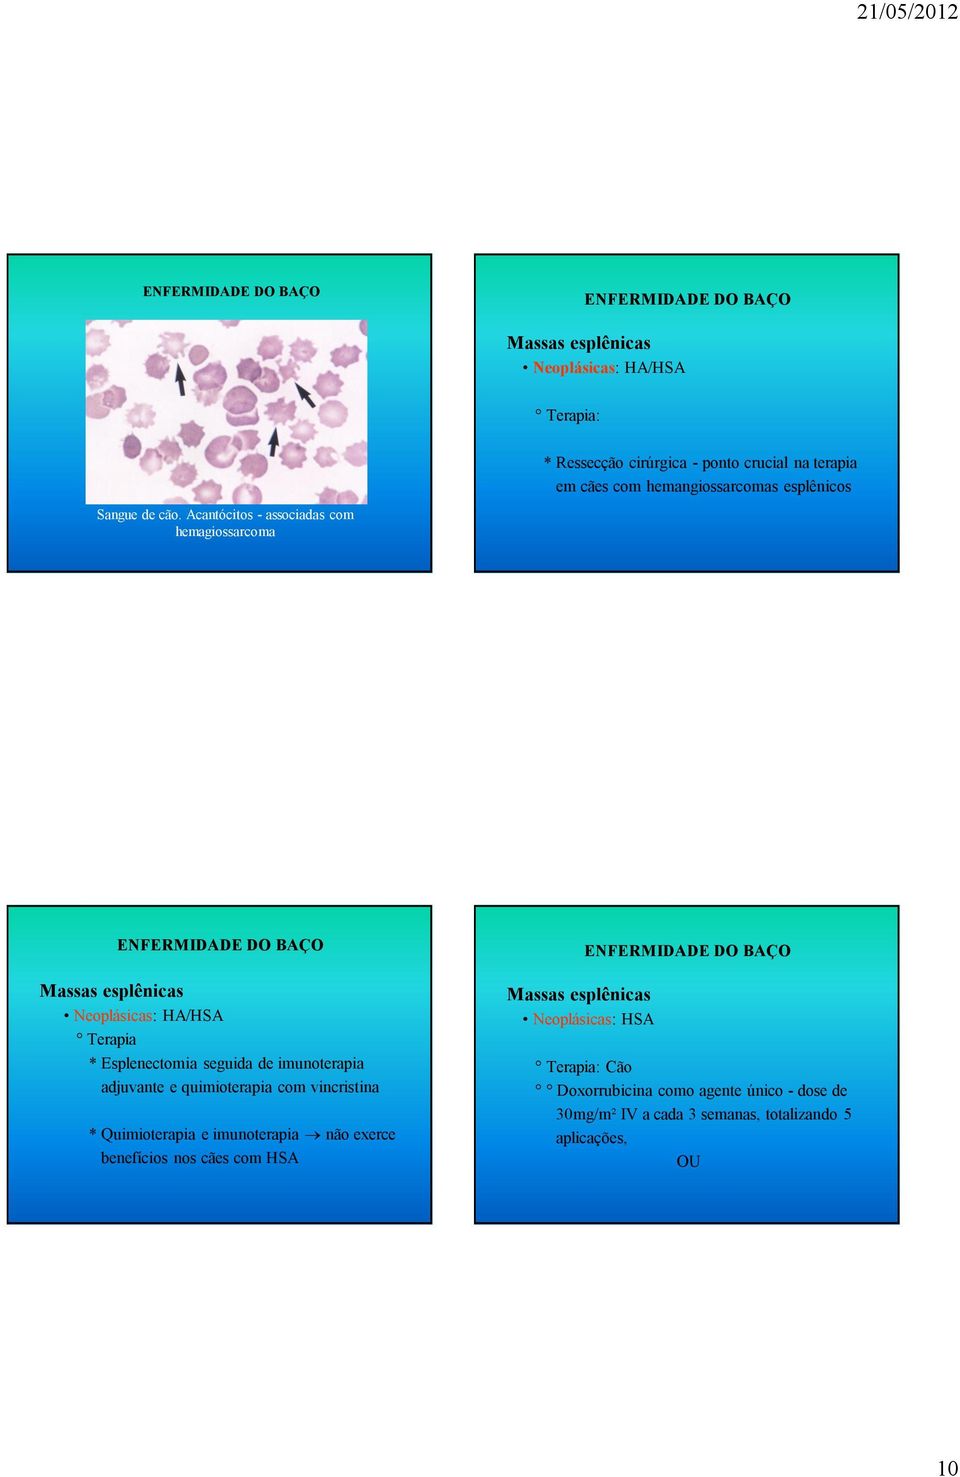 Acantócitos - associadas com hemagiossarcoma Massas esplênicas Neoplásicas: HA/HSA Terapia * Esplenectomia seguida de imunoterapia